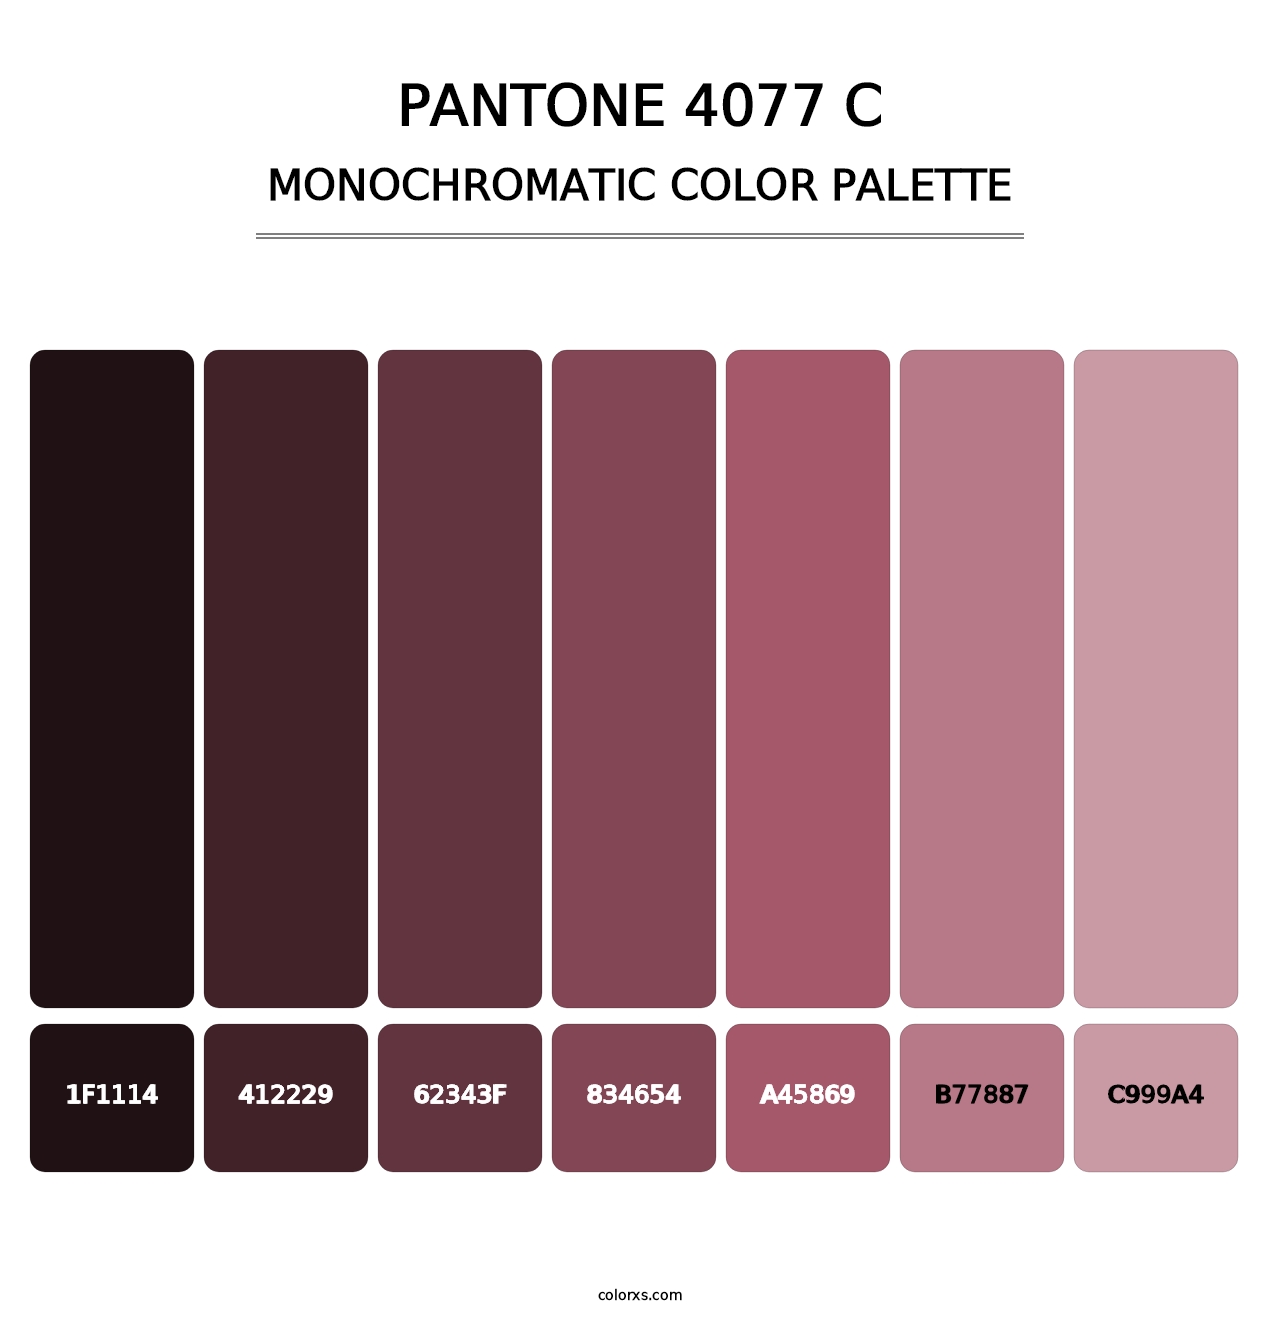 PANTONE 4077 C - Monochromatic Color Palette